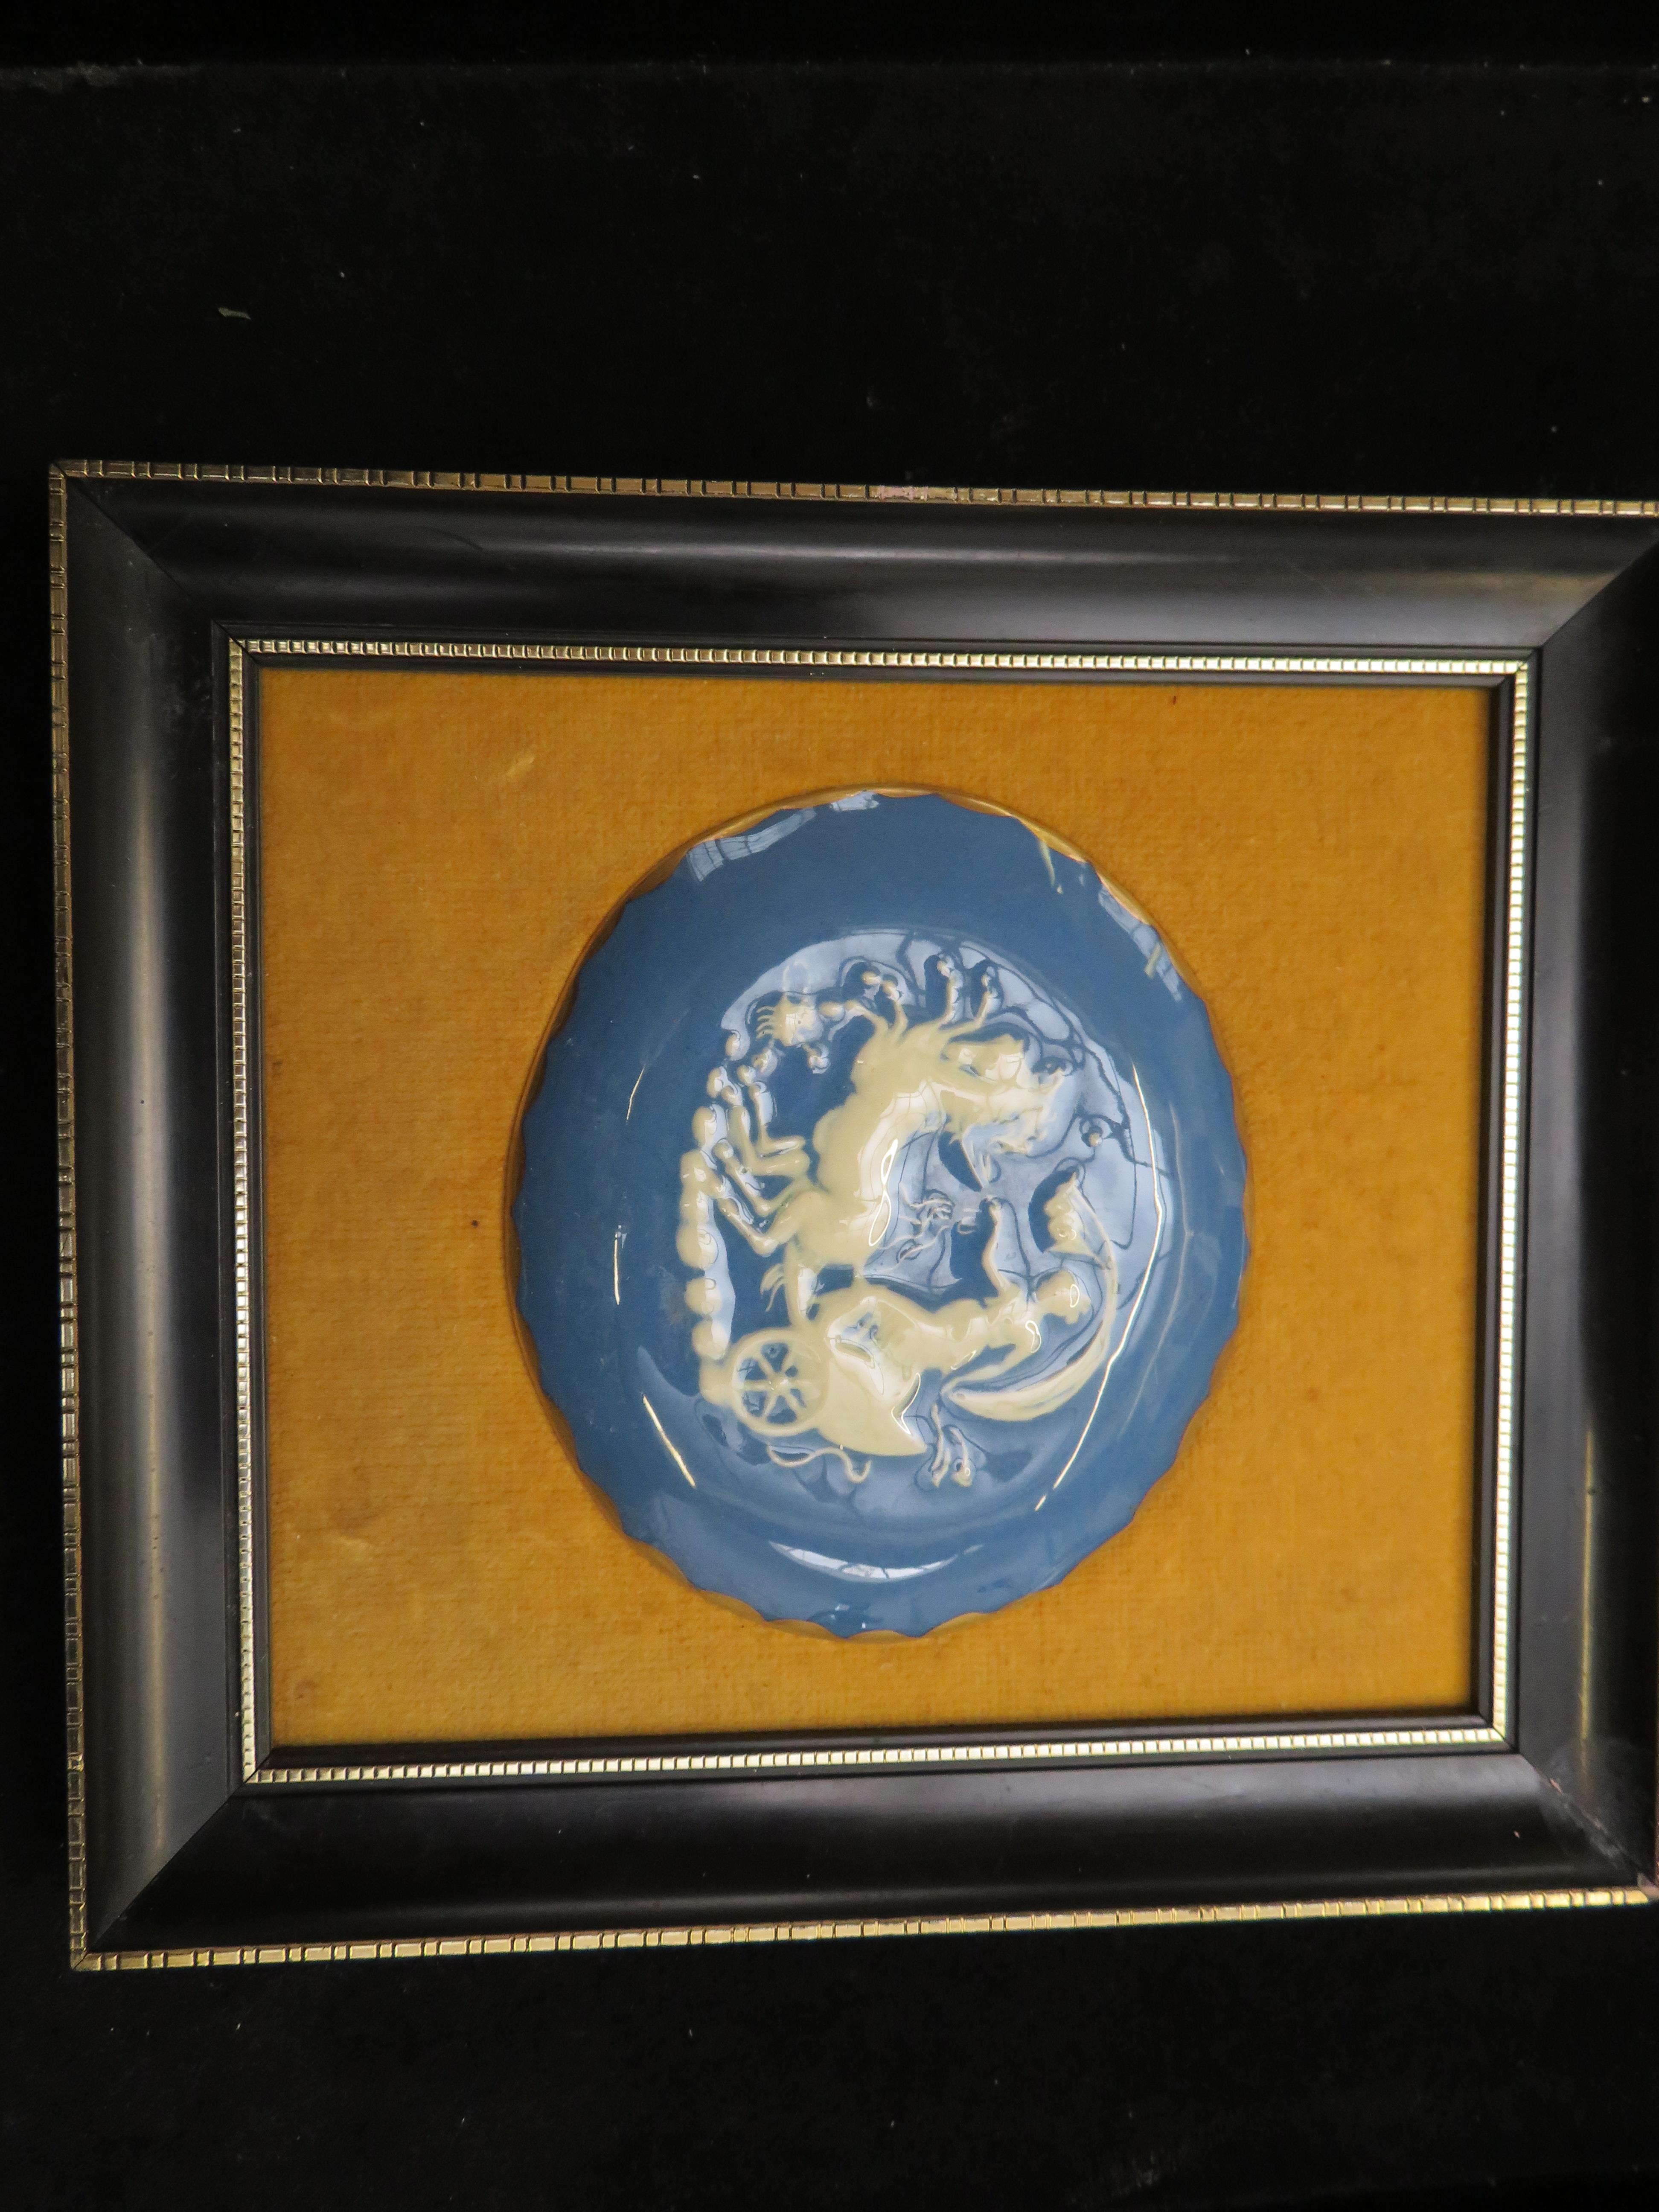 Framed Pat-Sur-Pat oval plaque (Plaque size 10 cm